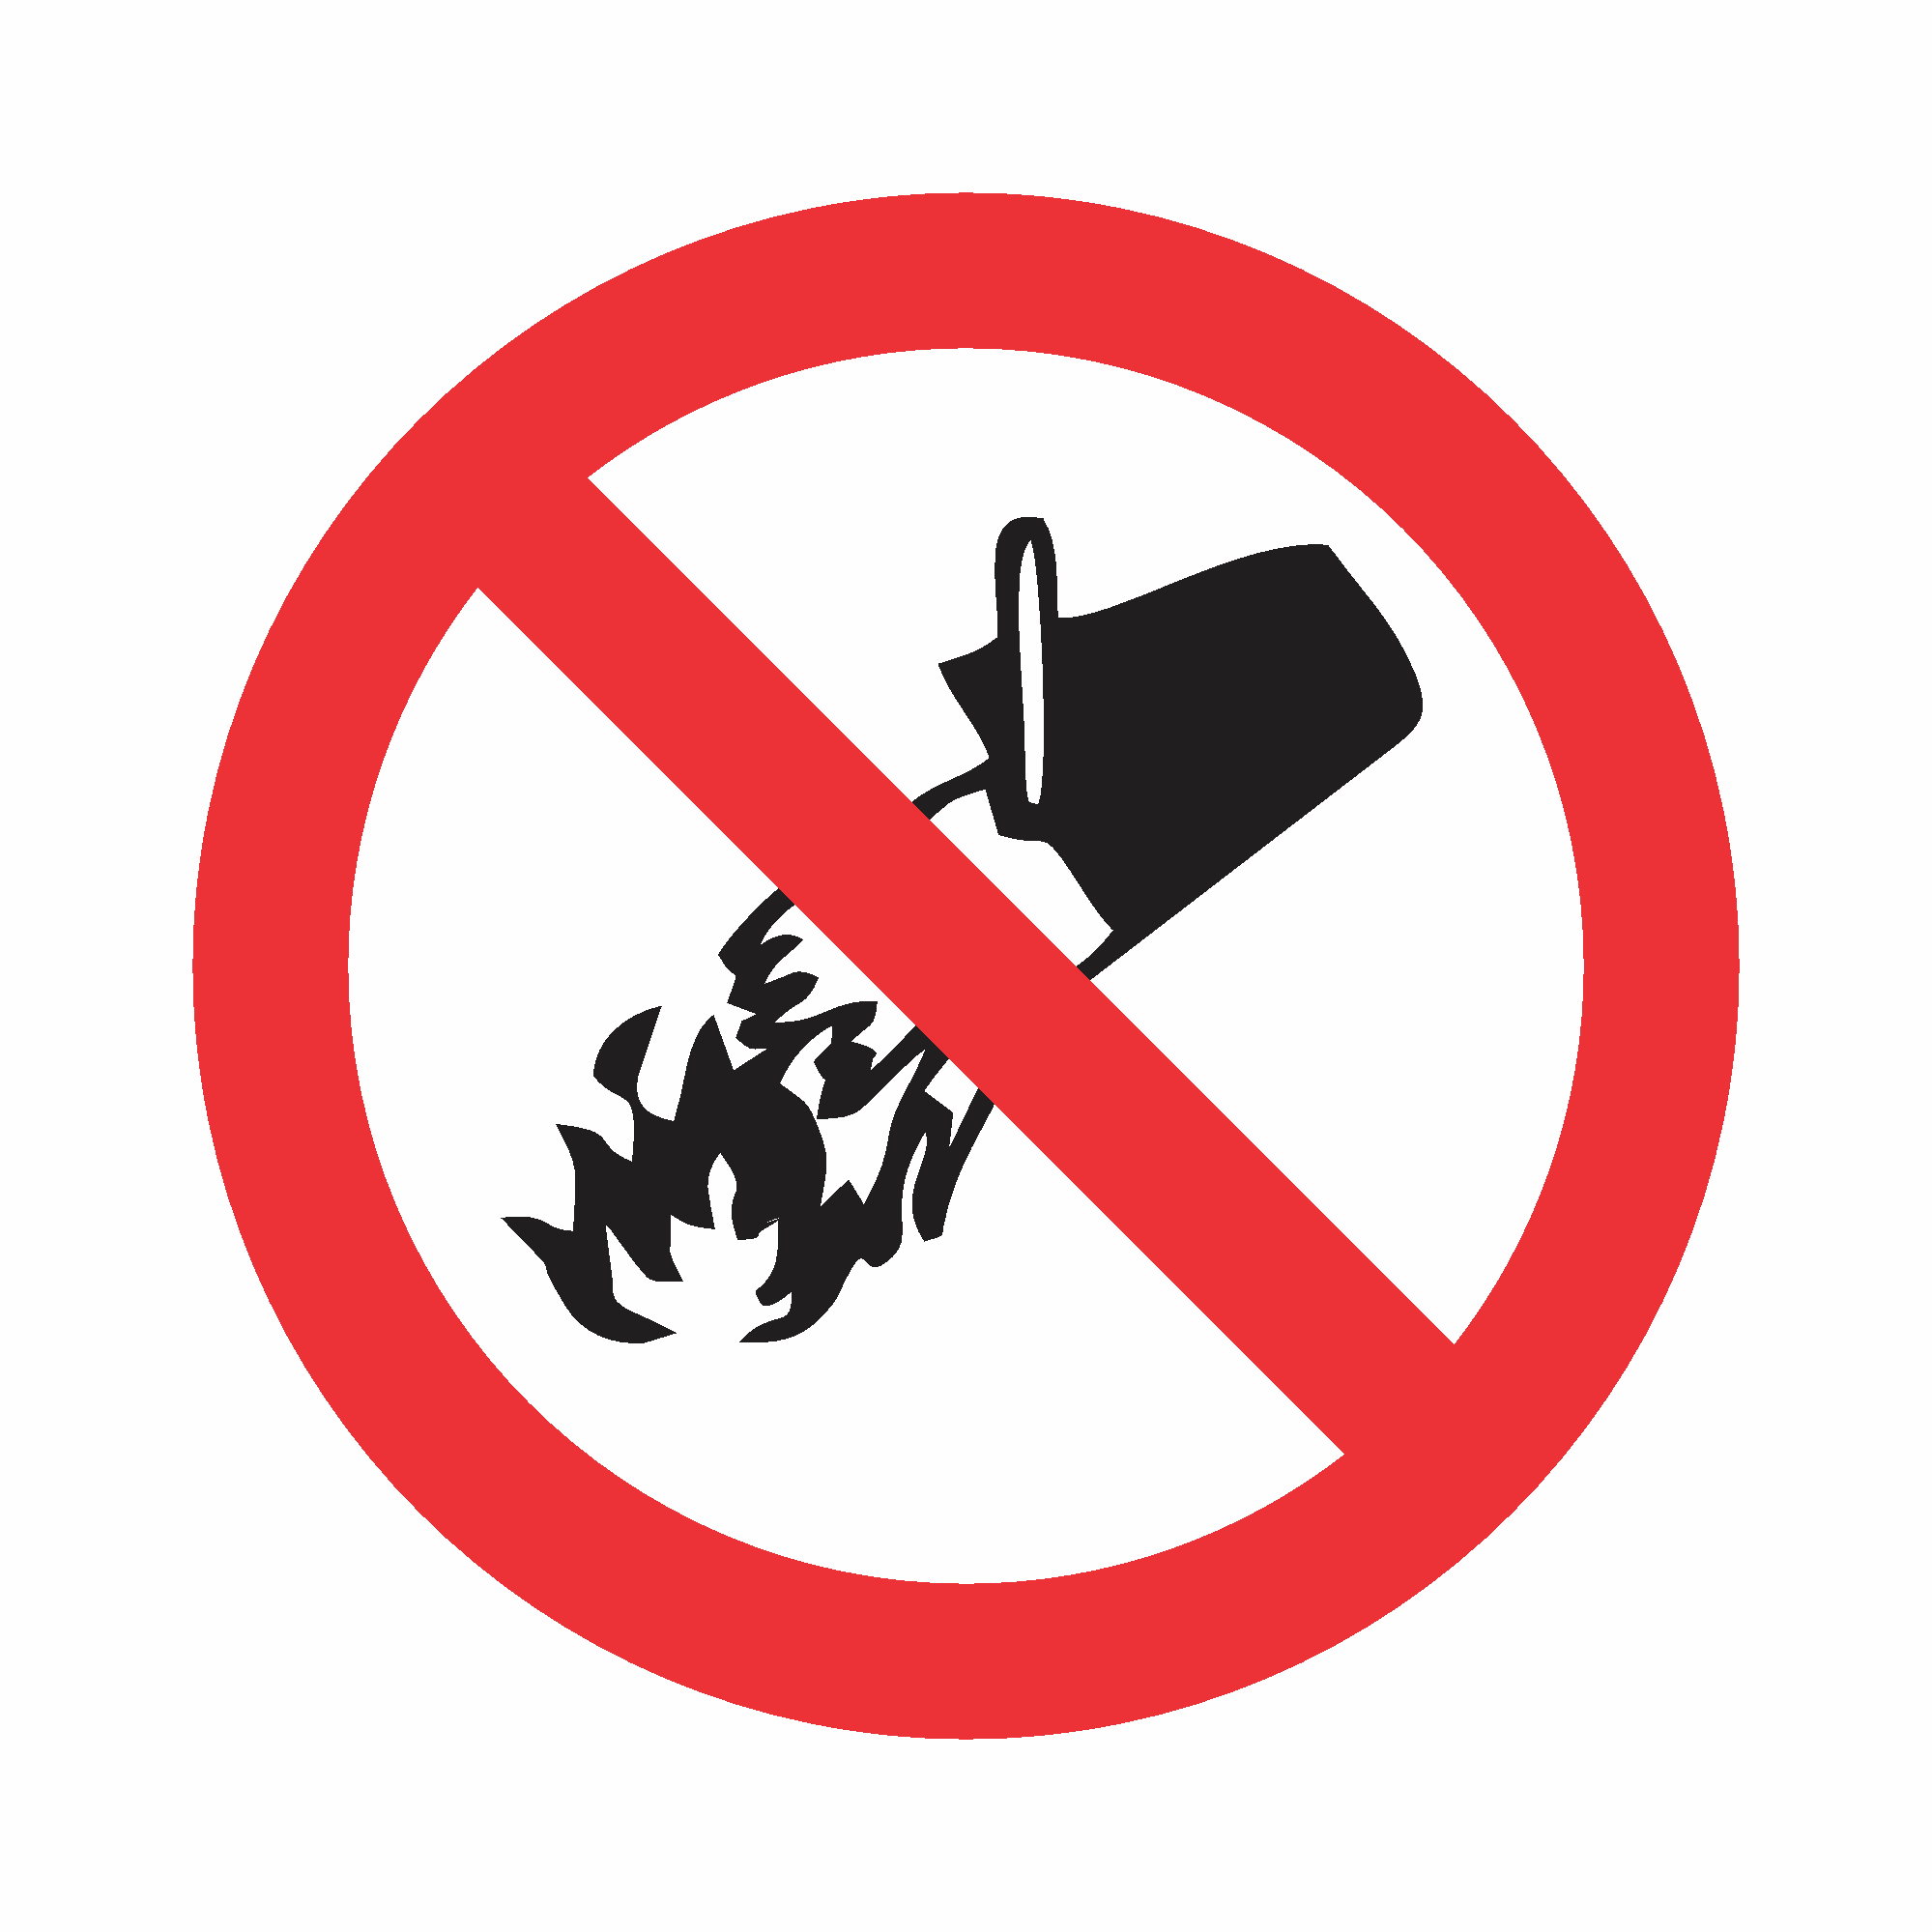 P3 - Proibido utilizar água para apagar o fogo